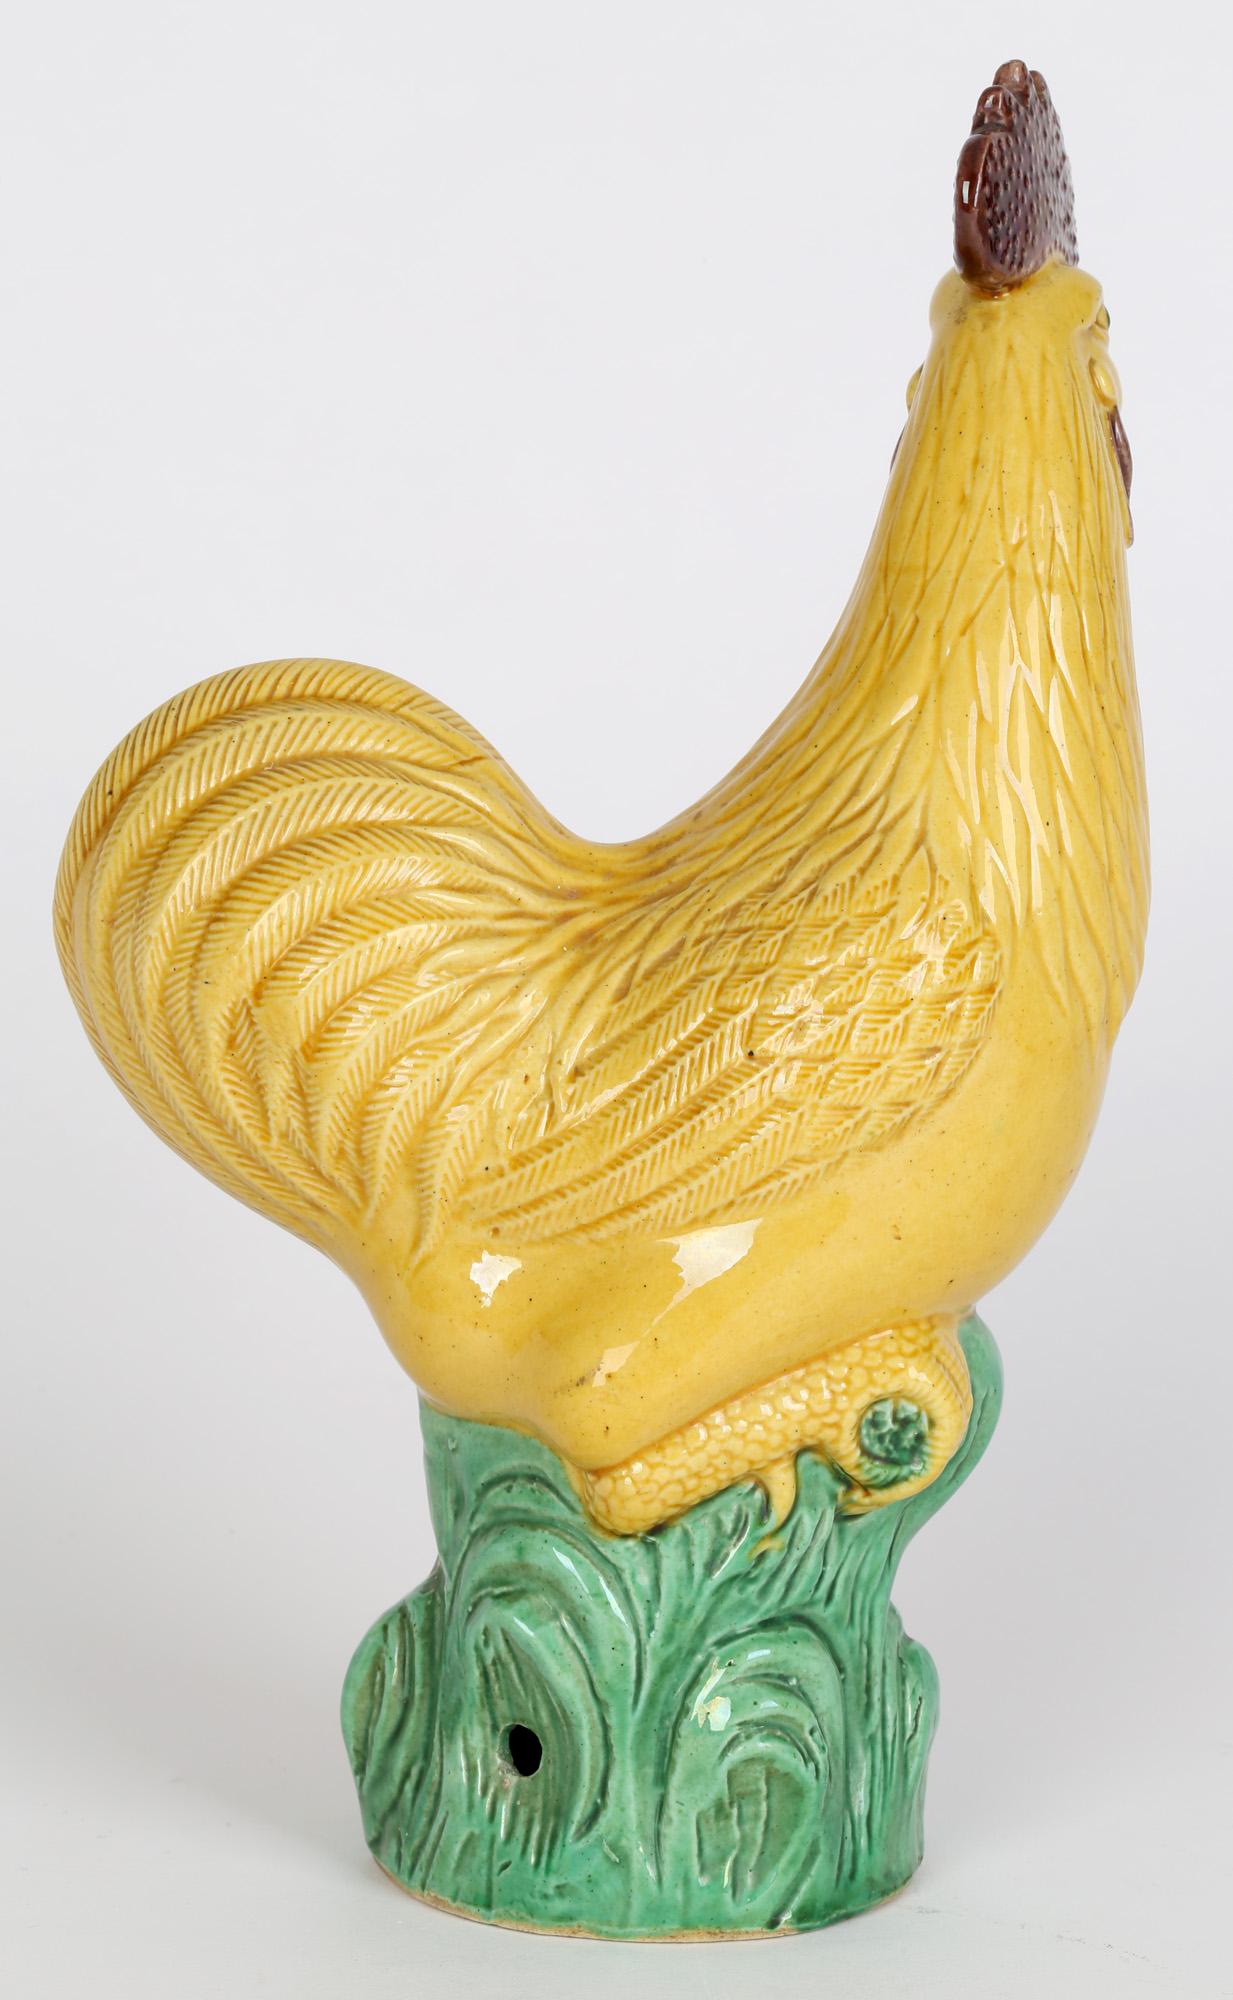 Rare et élégante figure de coq en poterie chinoise Qing datant du XIXe ou du début du XXe siècle. La figurine creuse légèrement en pot est très finement détaillée et représente le coq debout sur un monticule d'herbe stylisé. Les pieds griffus, les